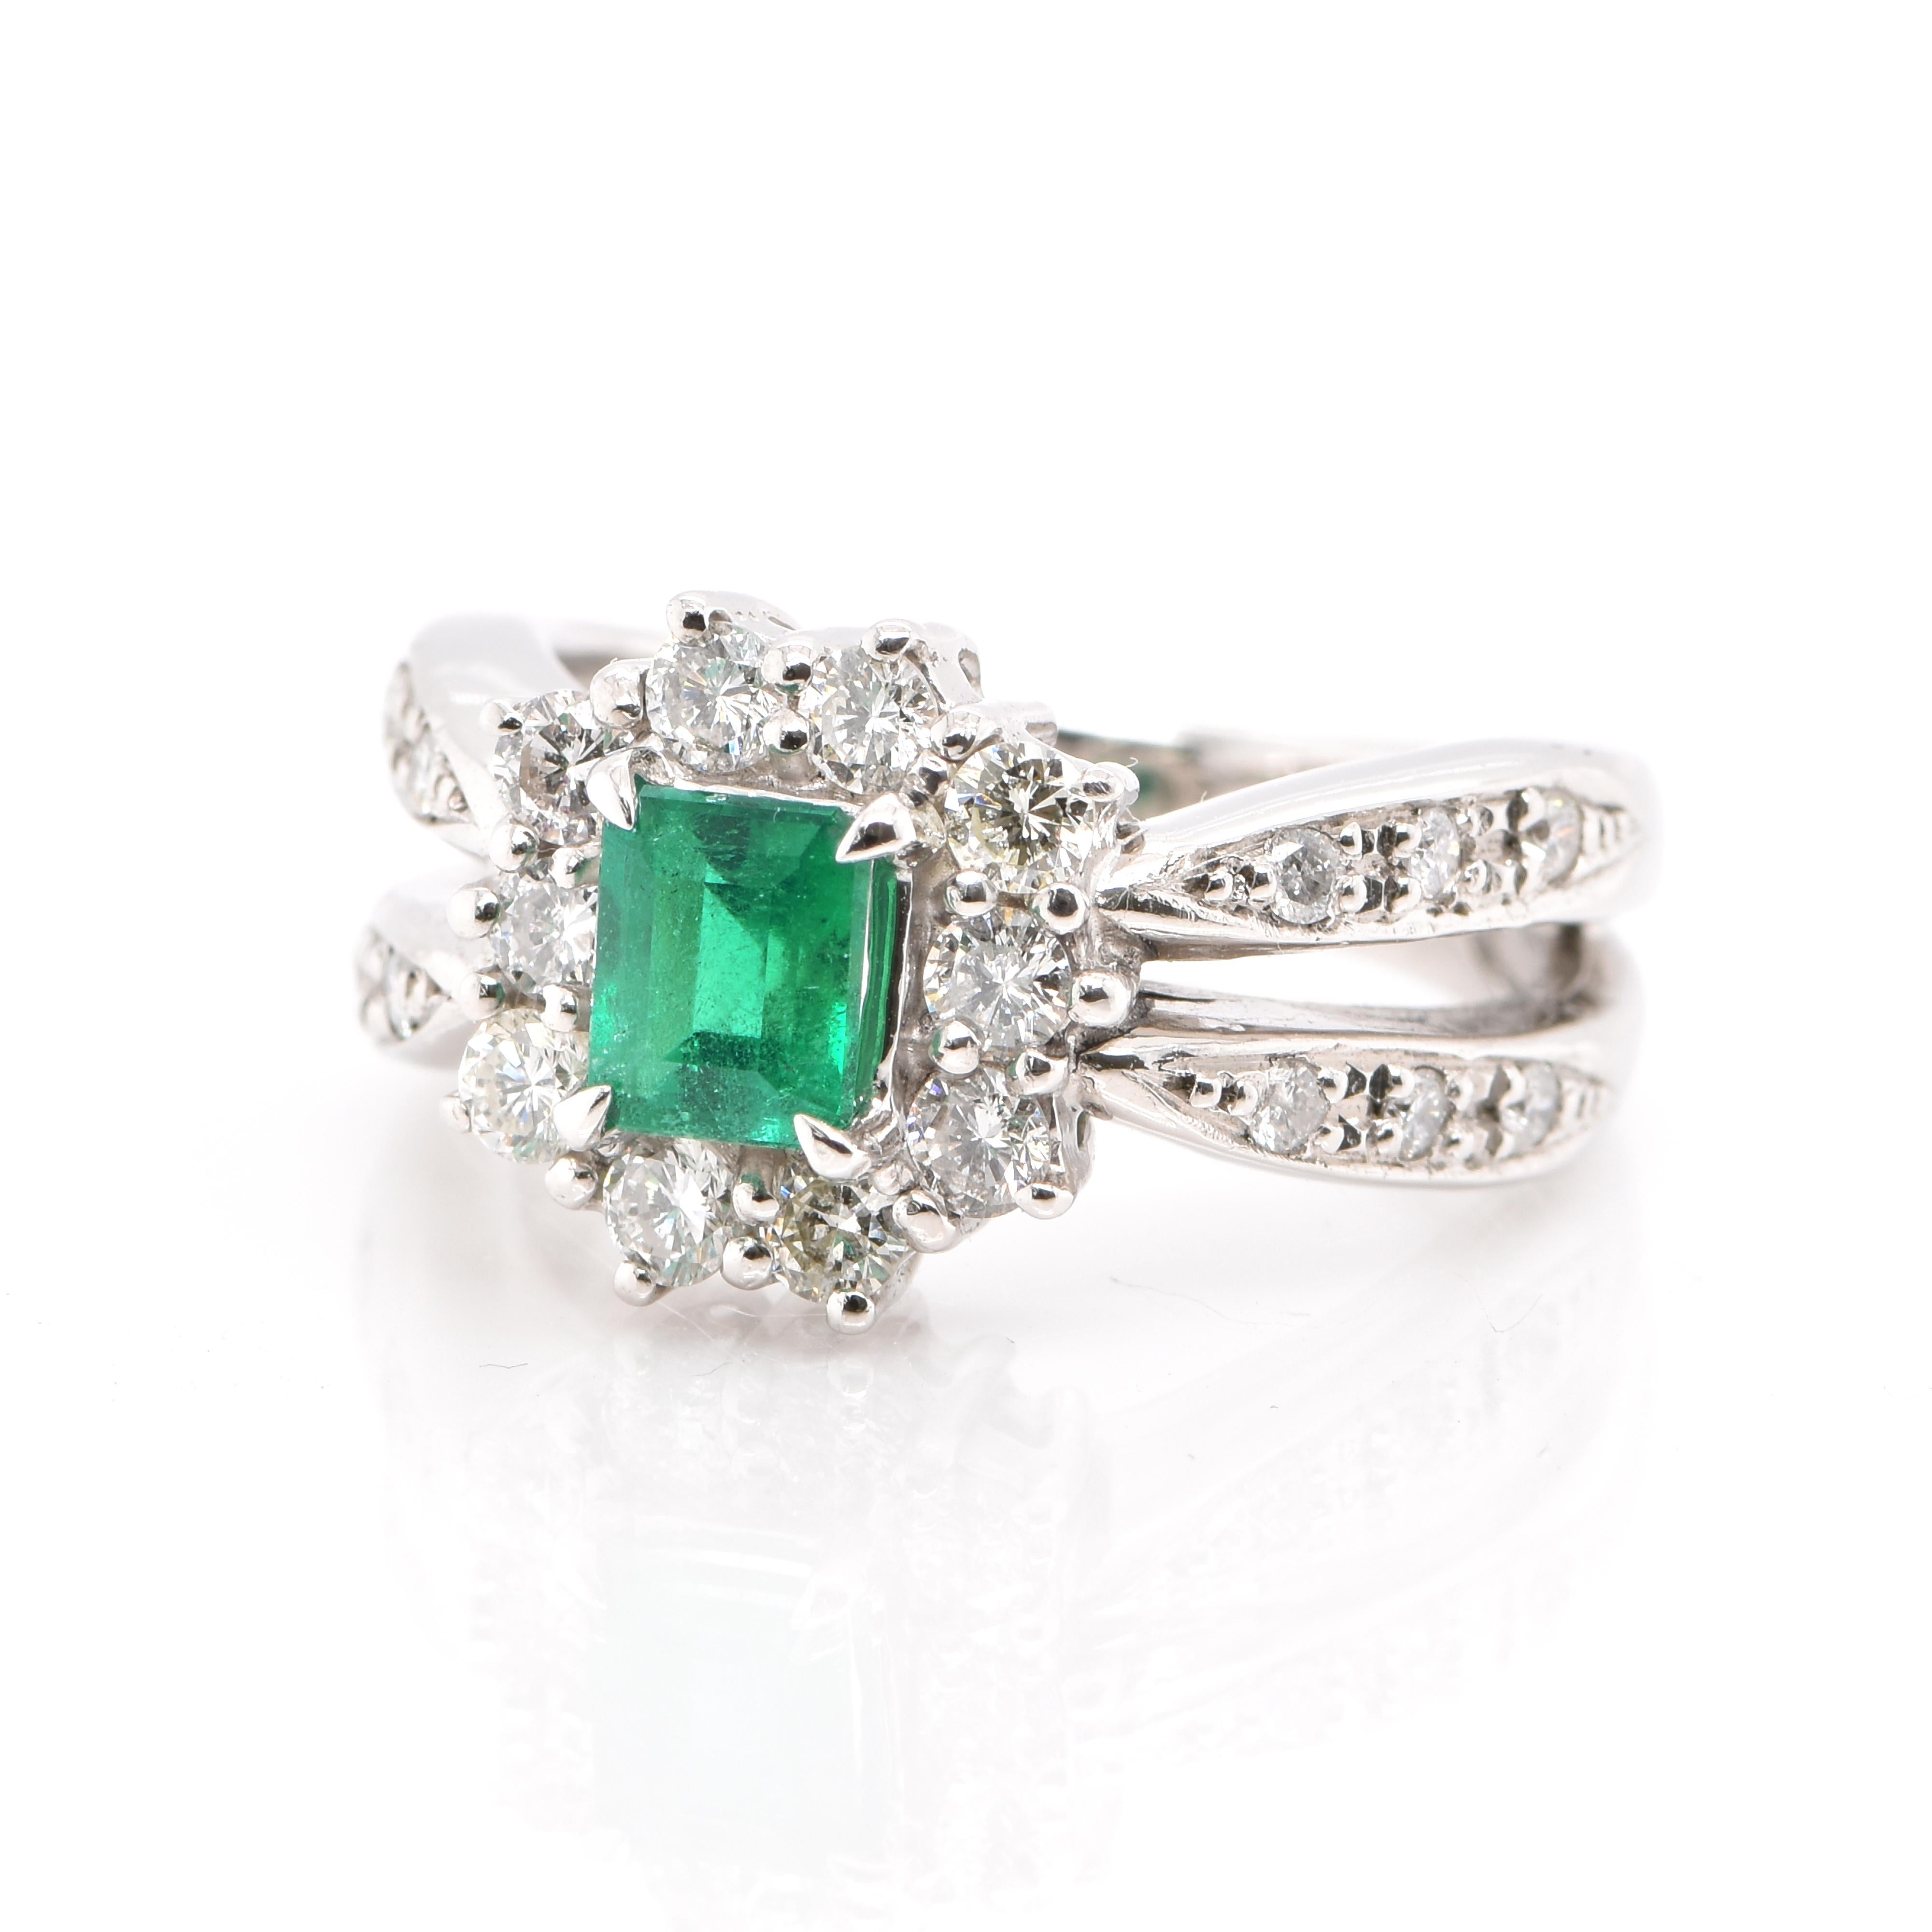 Ein wunderschön gemachter Estate Ring mit einem 0,69 Karat, natürlichen Smaragd und 0,64 Karat weißen runden Brillanten in Platin gefasst. Seit Tausenden von Jahren bewundern die Menschen das Grün des Smaragds. Smaragde werden seit jeher mit den